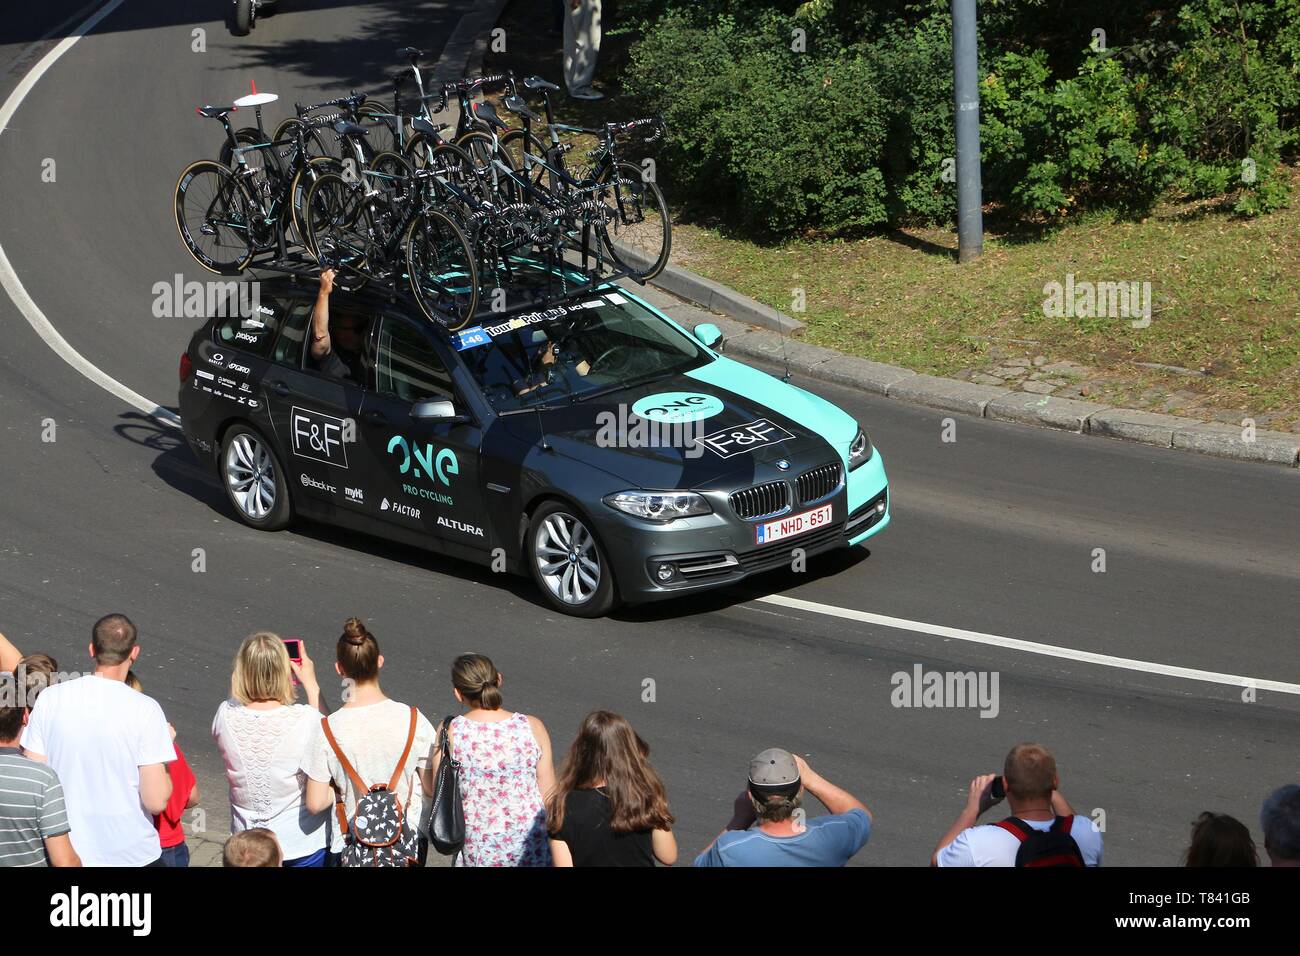 Szczecin, Pologne - 13 juillet 2016 : les lecteurs de véhicule de l'équipe course cycliste Tour de Pologne en Pologne. Voiture BMW d'un Pro Cycling Team depuis le Royaume-Uni. Banque D'Images